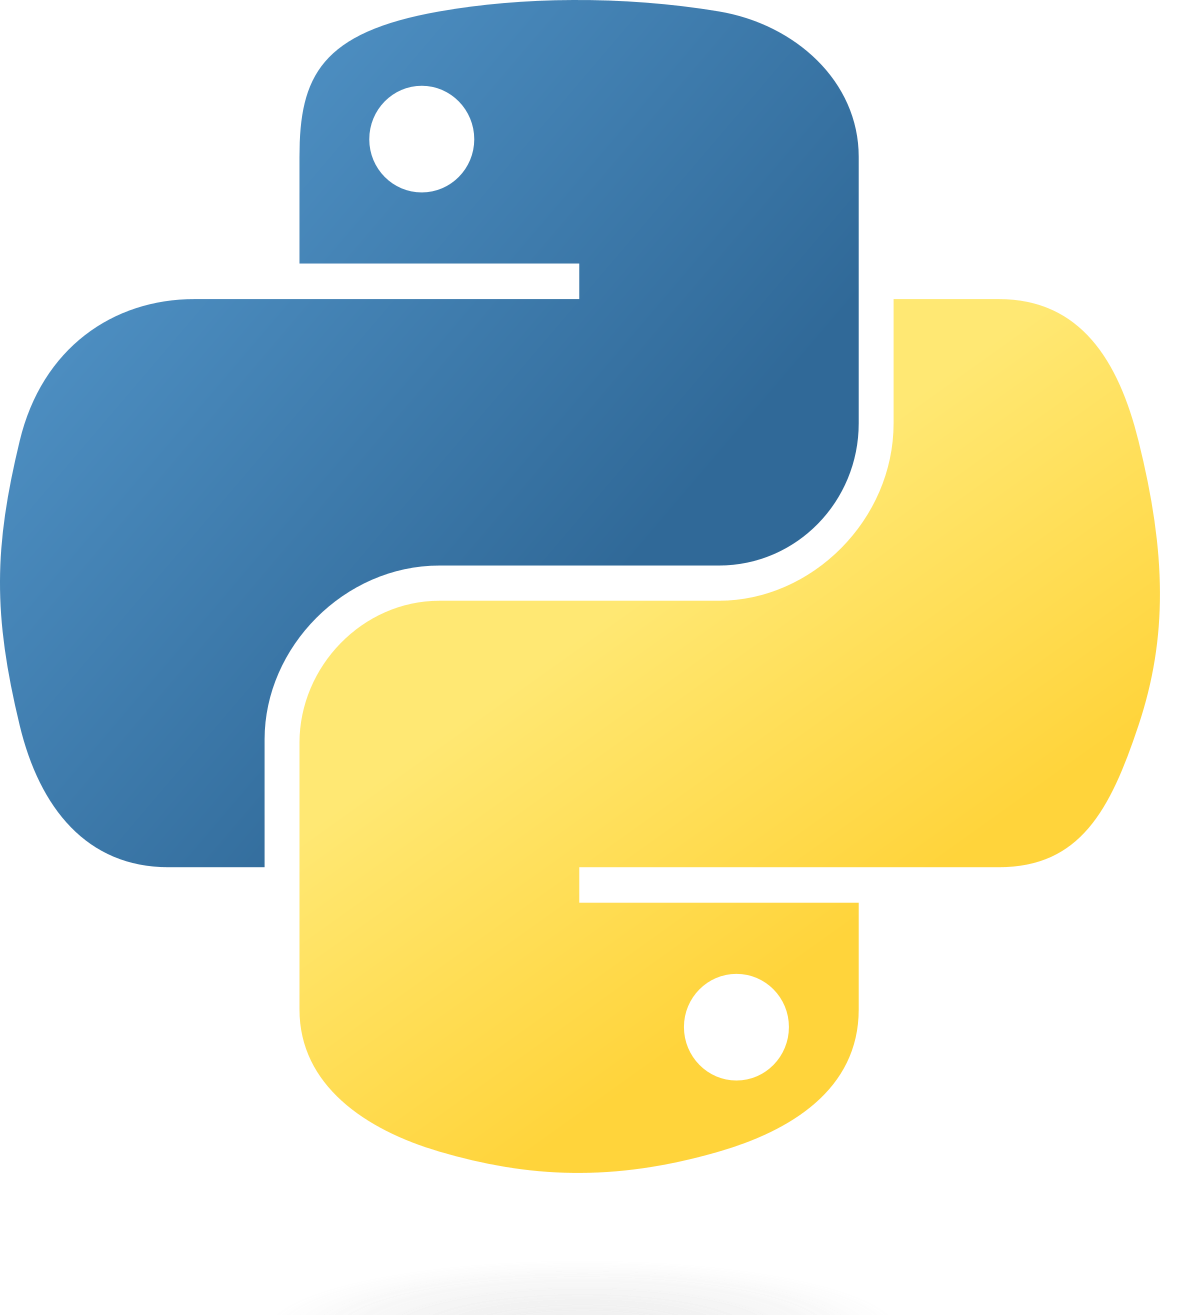 Coding languages logos